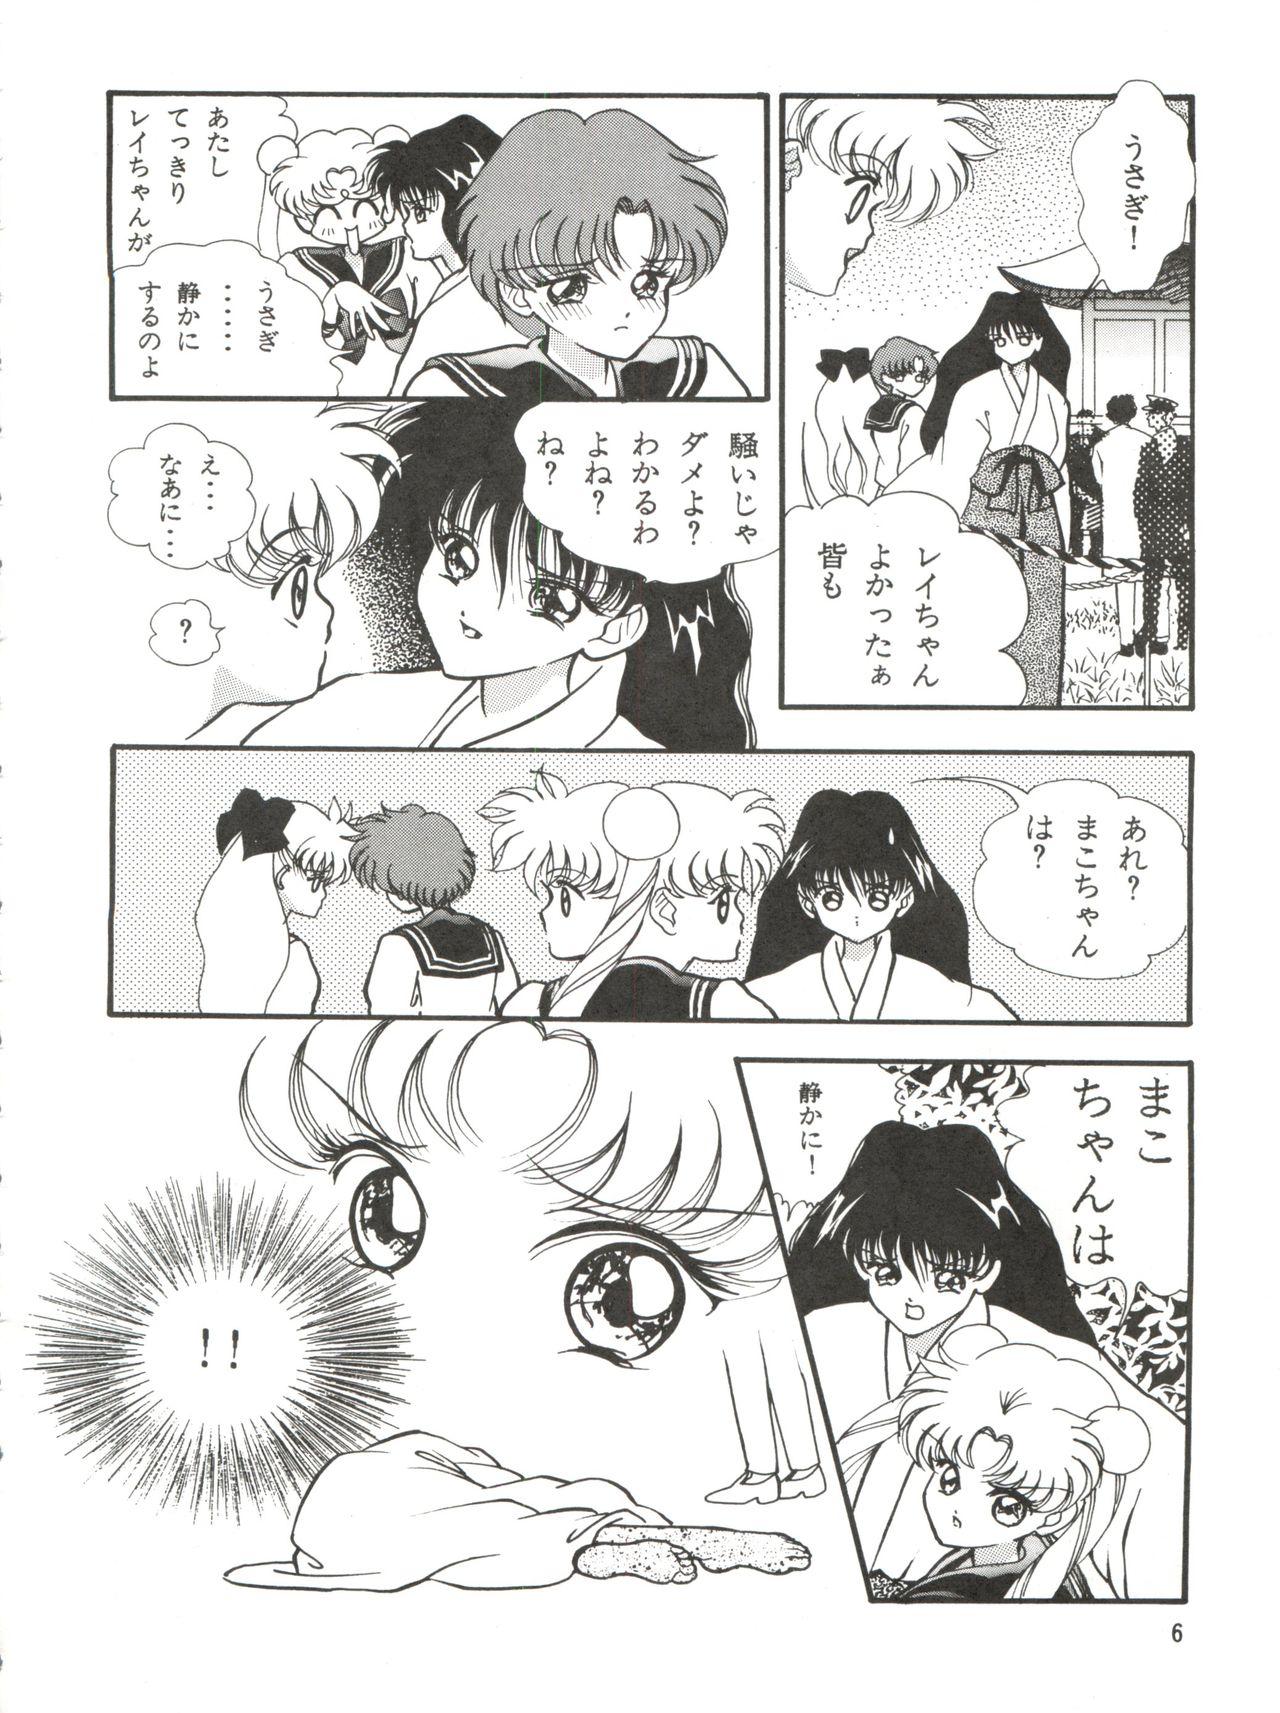 Ass Fuck Aoi no Mercury - Sailor moon Fun - Page 7